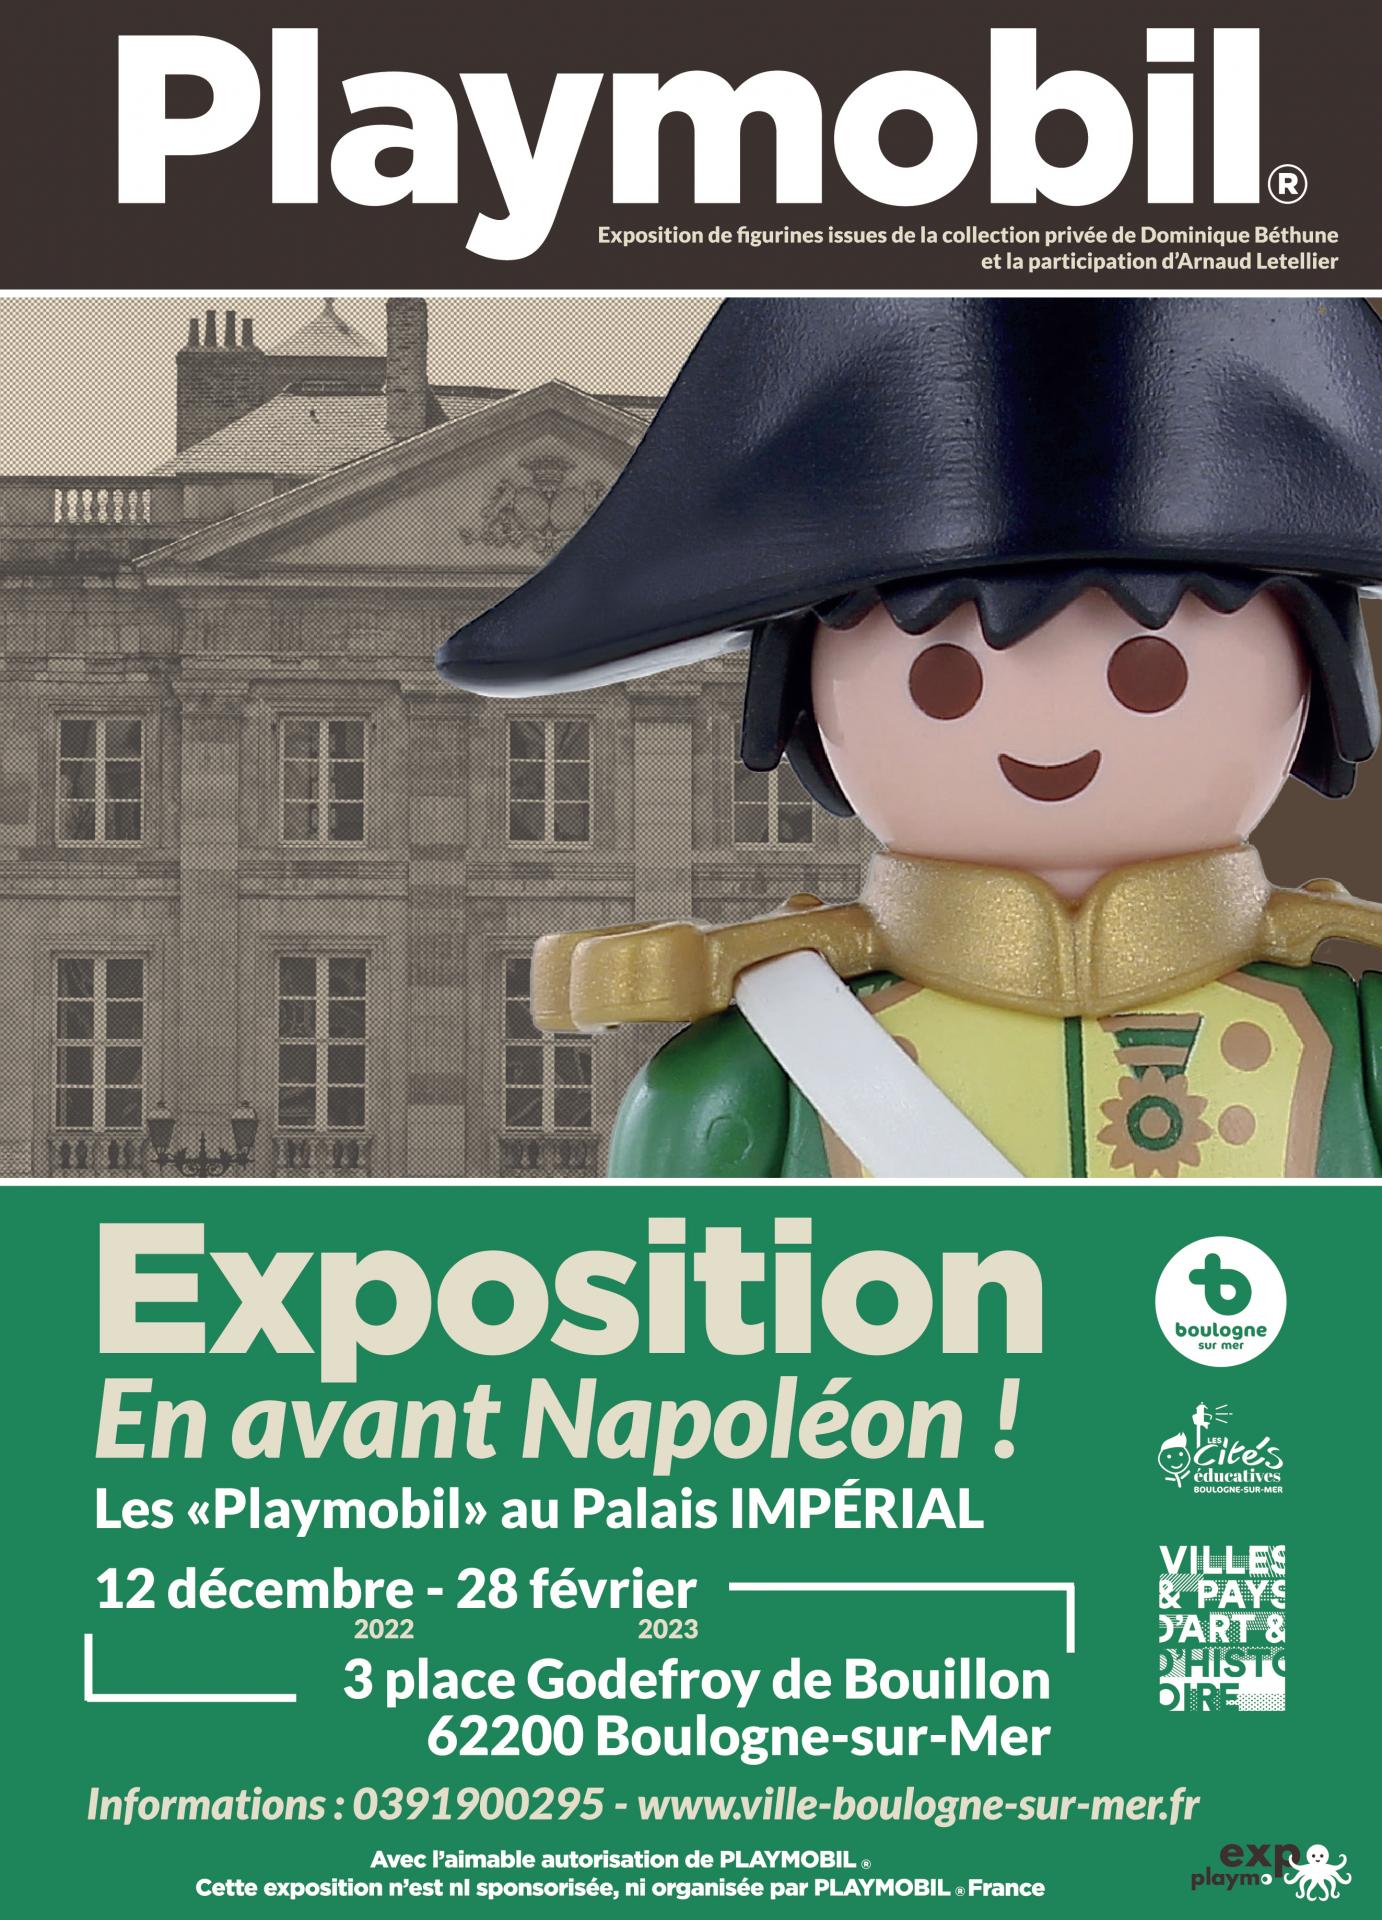 Playmobil®, en avant les métiers de la Gendarmerie! : Lignes de